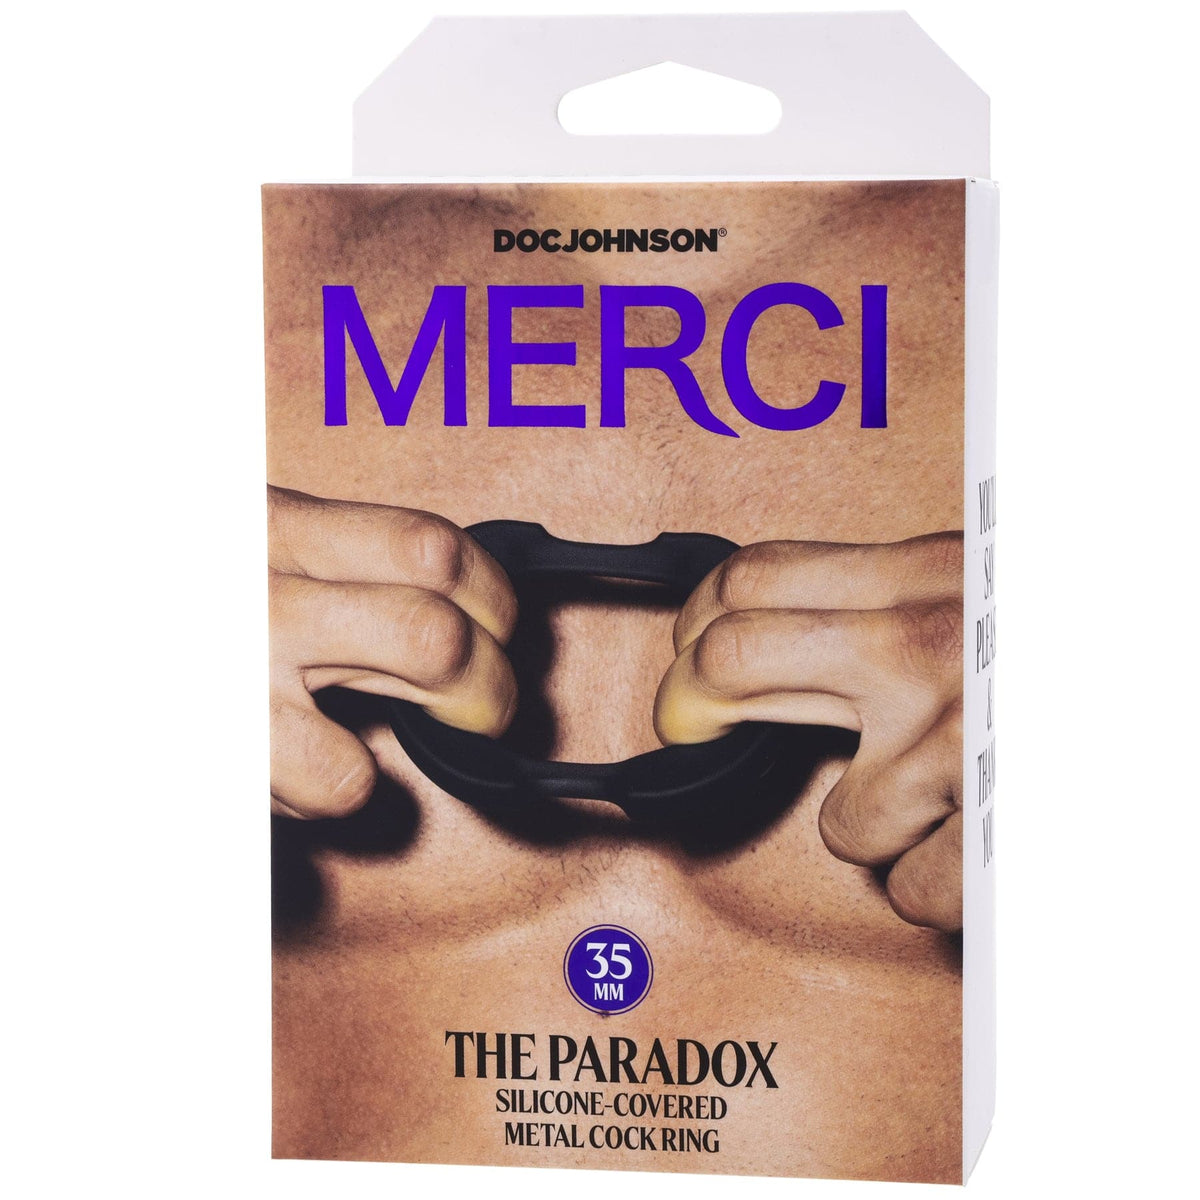 Merci - the Paradox - Anillo para el pene de metal cubierto de silicona - 35 mm - Negro